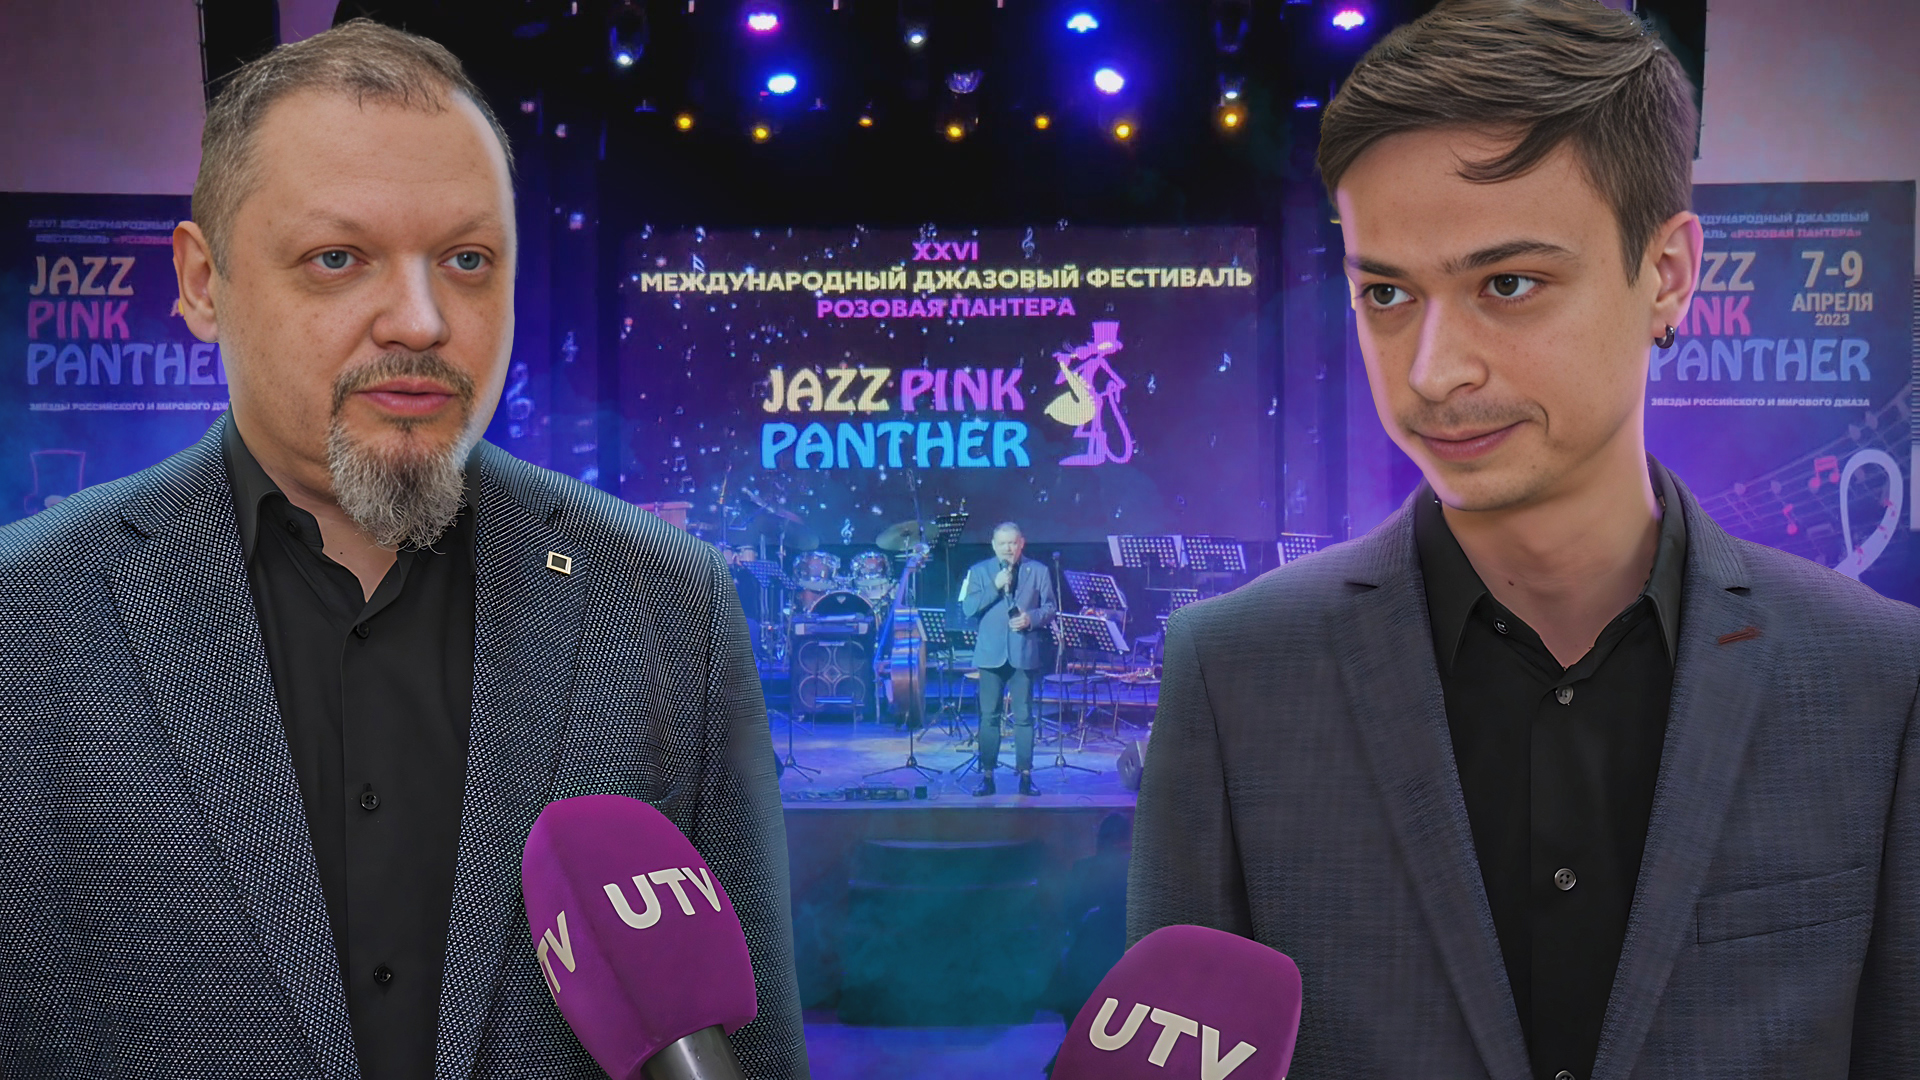 Джаз и общение с музыкантами. Чем запомнится уфимский фестиваль «Розовая пантера»